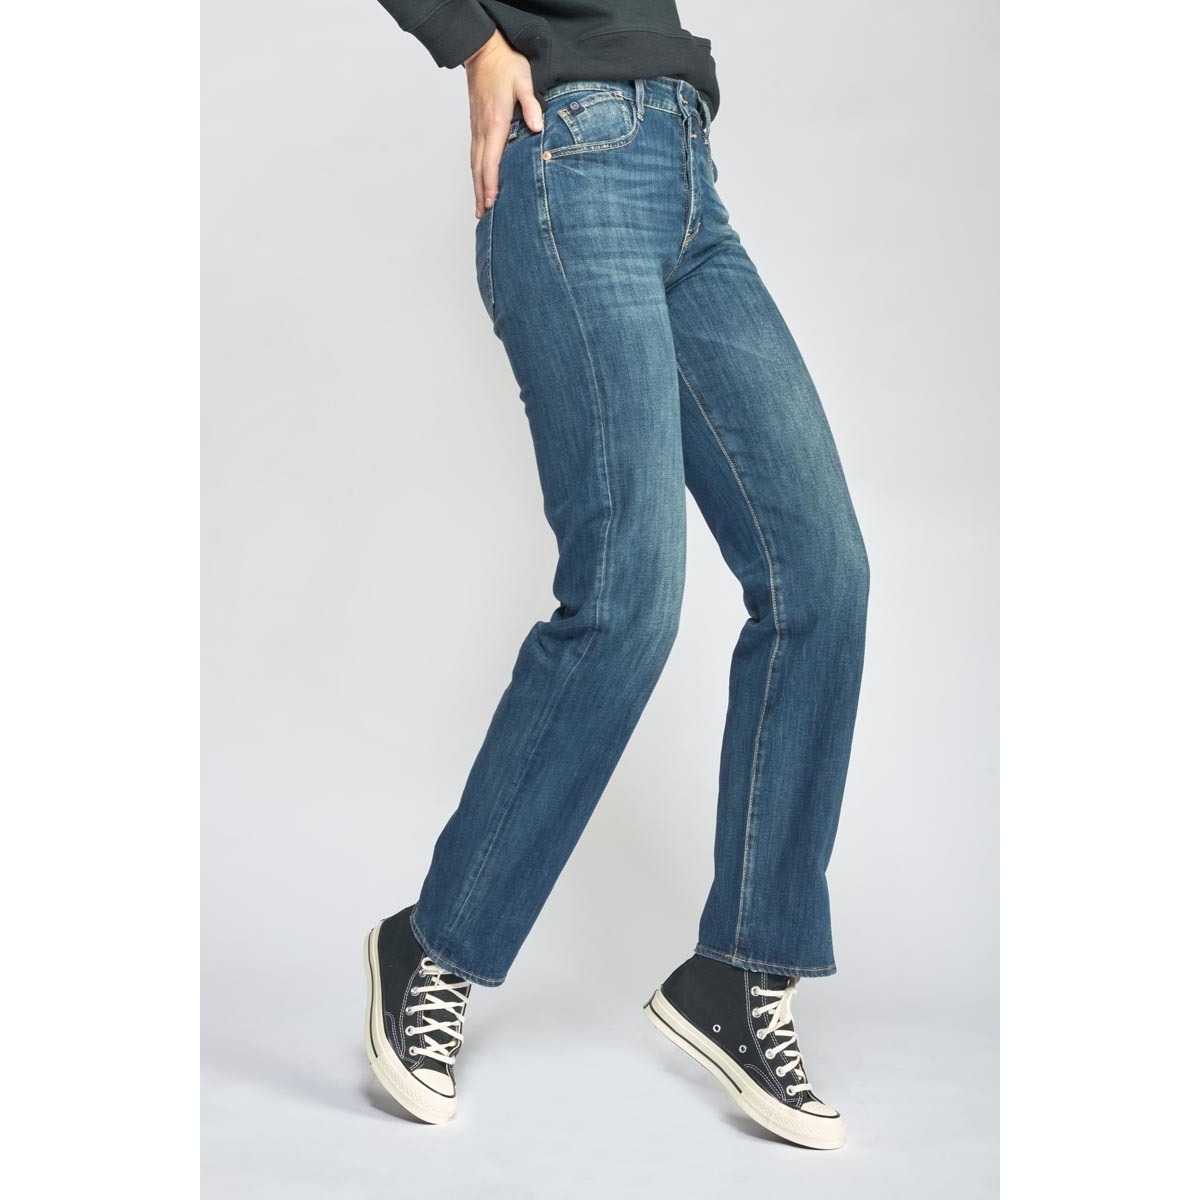 Le Temps des Cerises Bleu Basic 400/19 mom taille haute jeans vintage bleu r9sqglfp